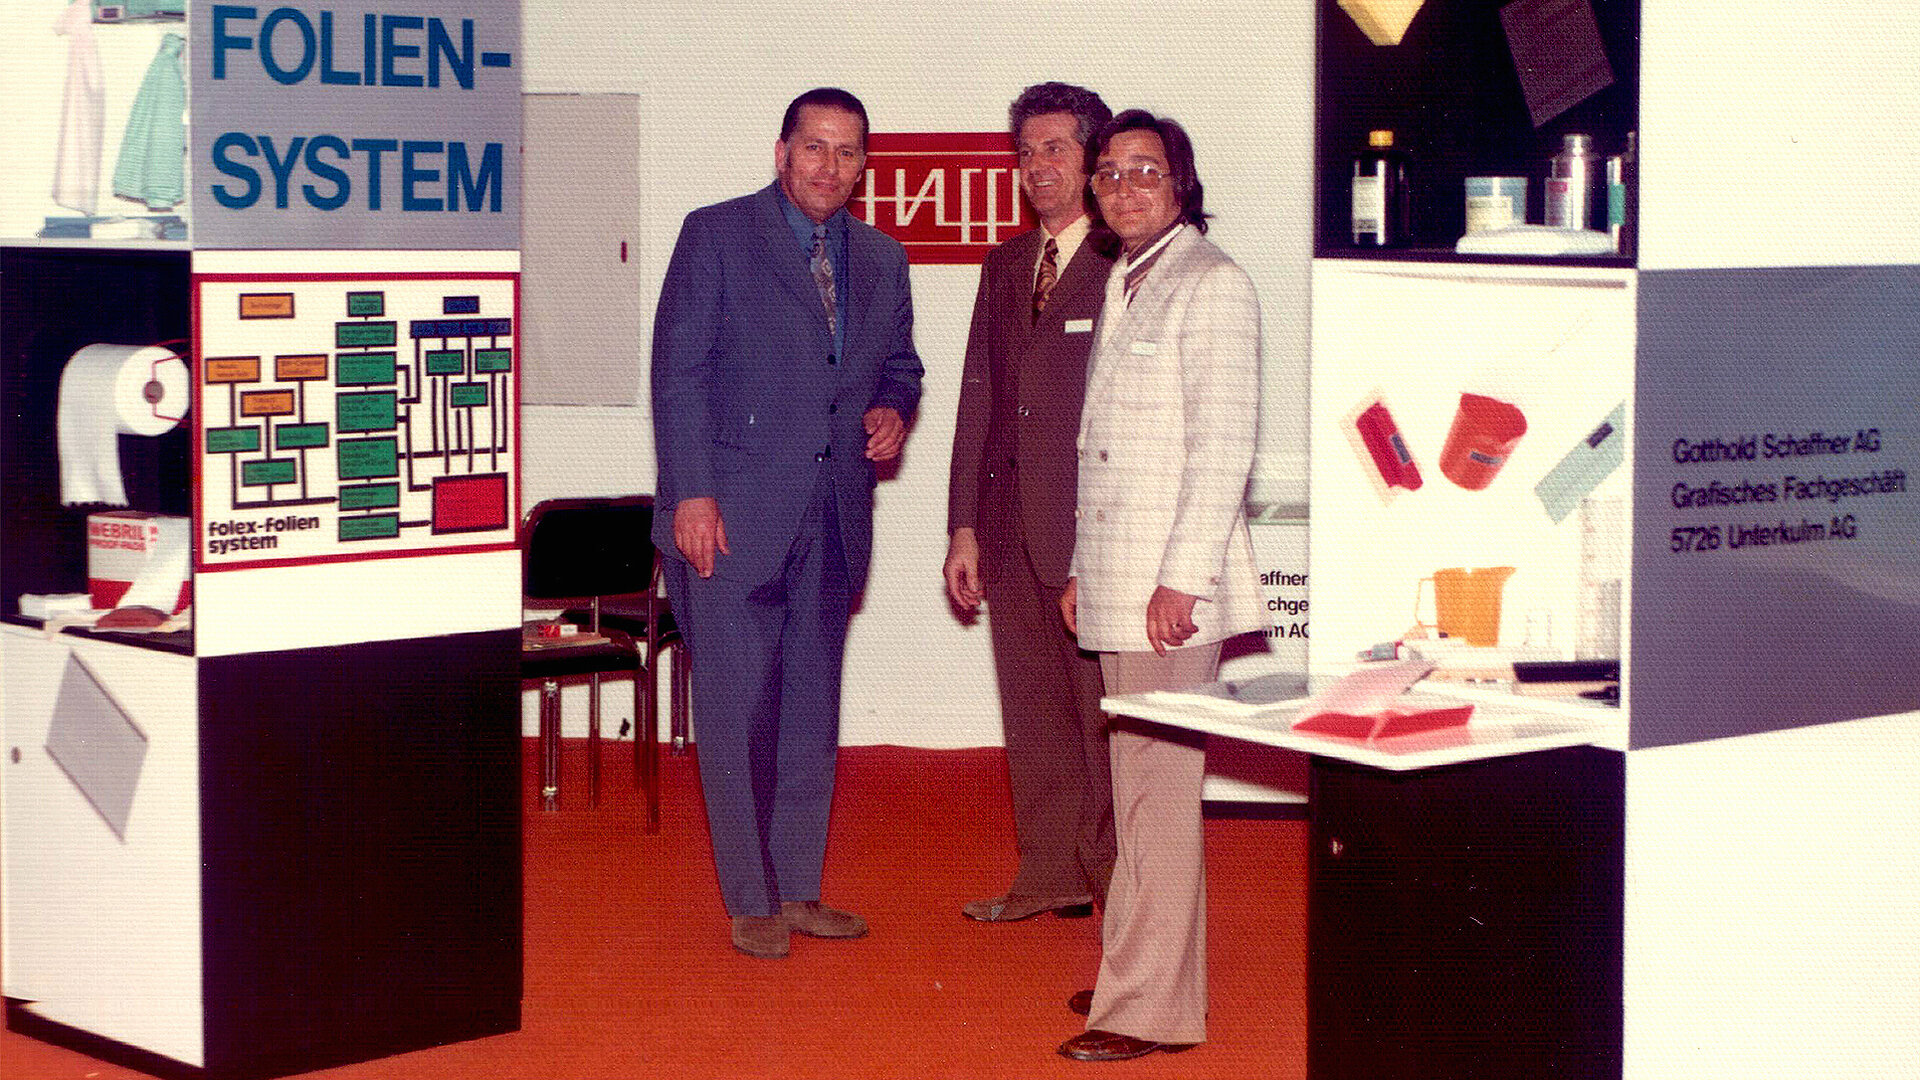 Première participation à un salon de Gotthold Schaffner AG en 1958, avec Gotthold Schaffner à droite.